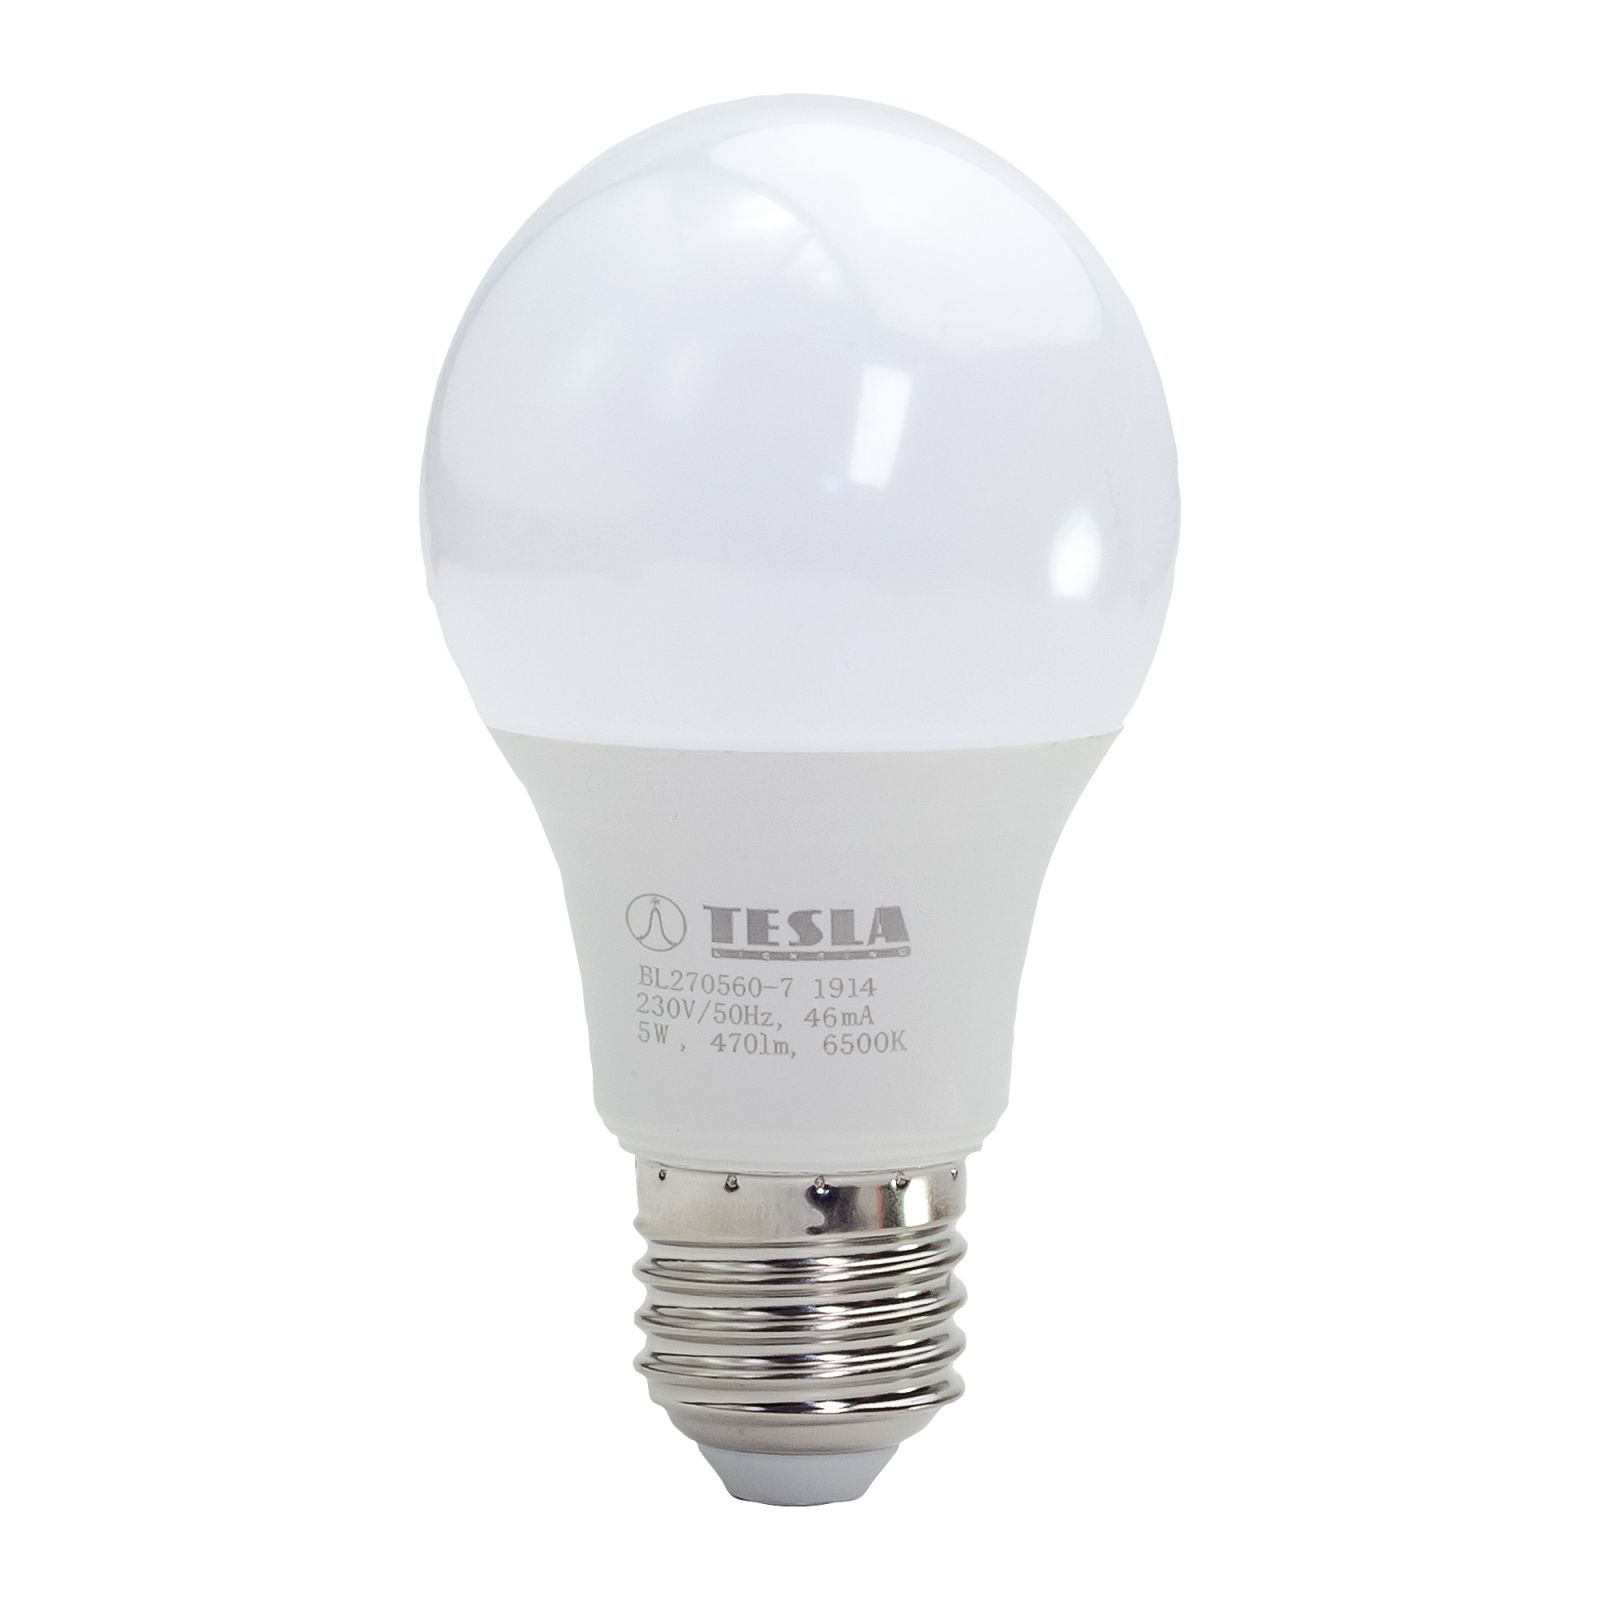 Tesla - LED žárovka BULB, E27, 5W, 230V, 470lm, 25 000h, 6500K studená bílá Tesla Lighting